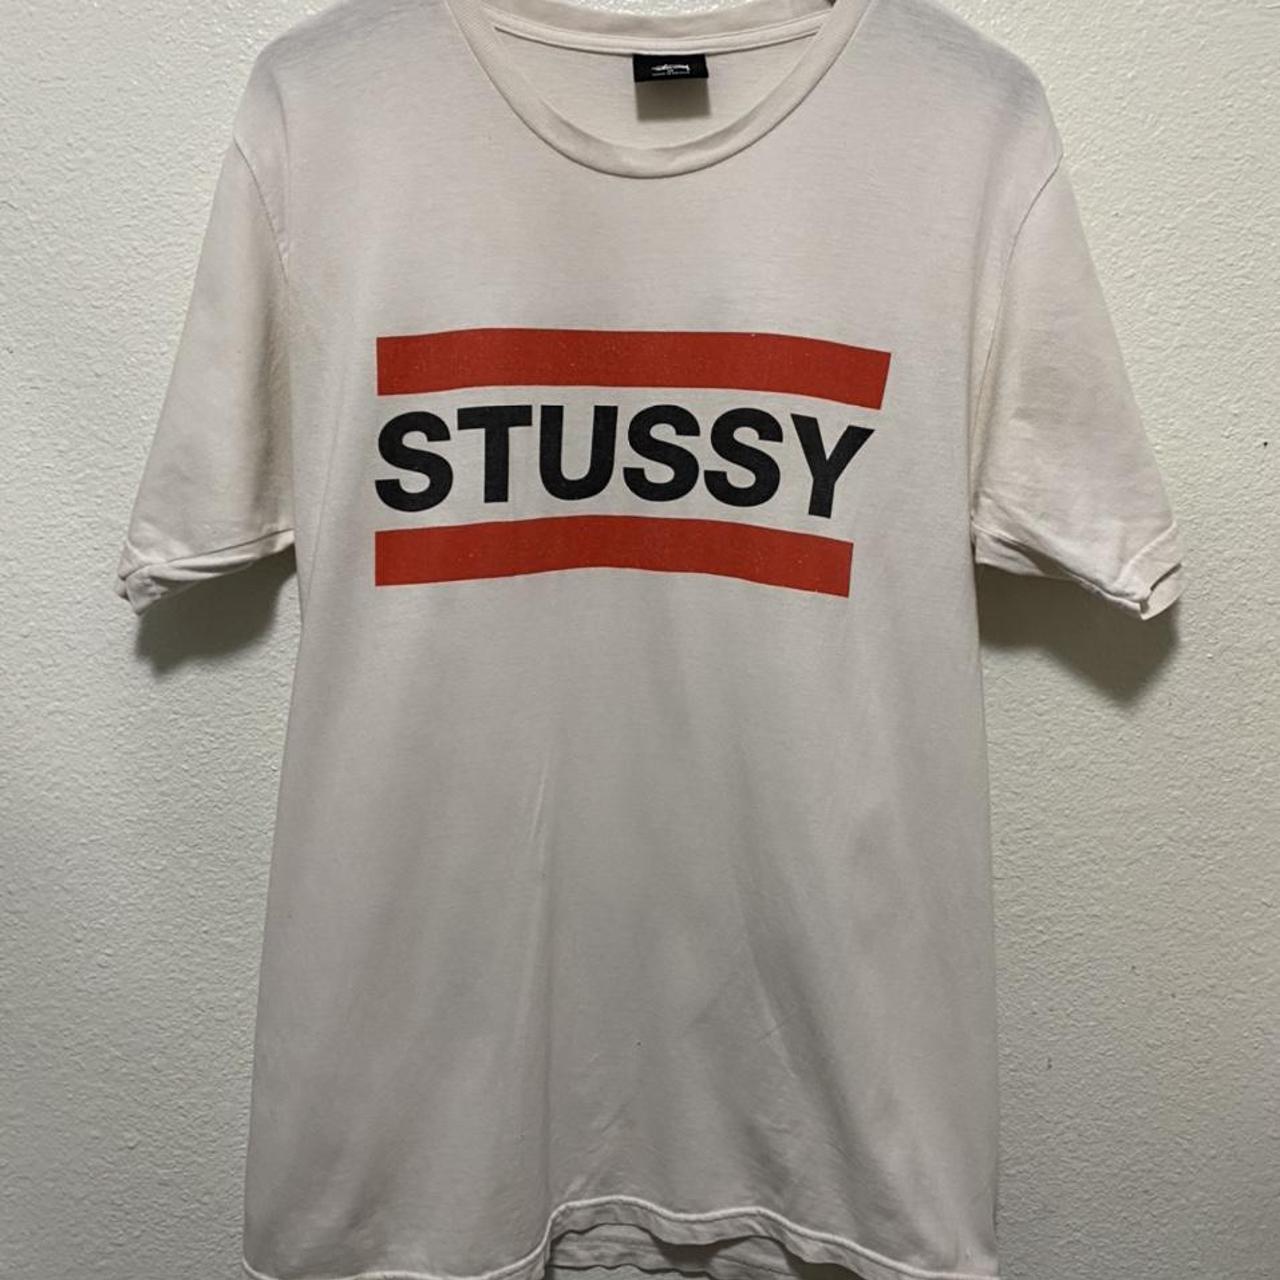 2000s Y2K Stussy Logo Streetwear T-shirt Size:... - Depop